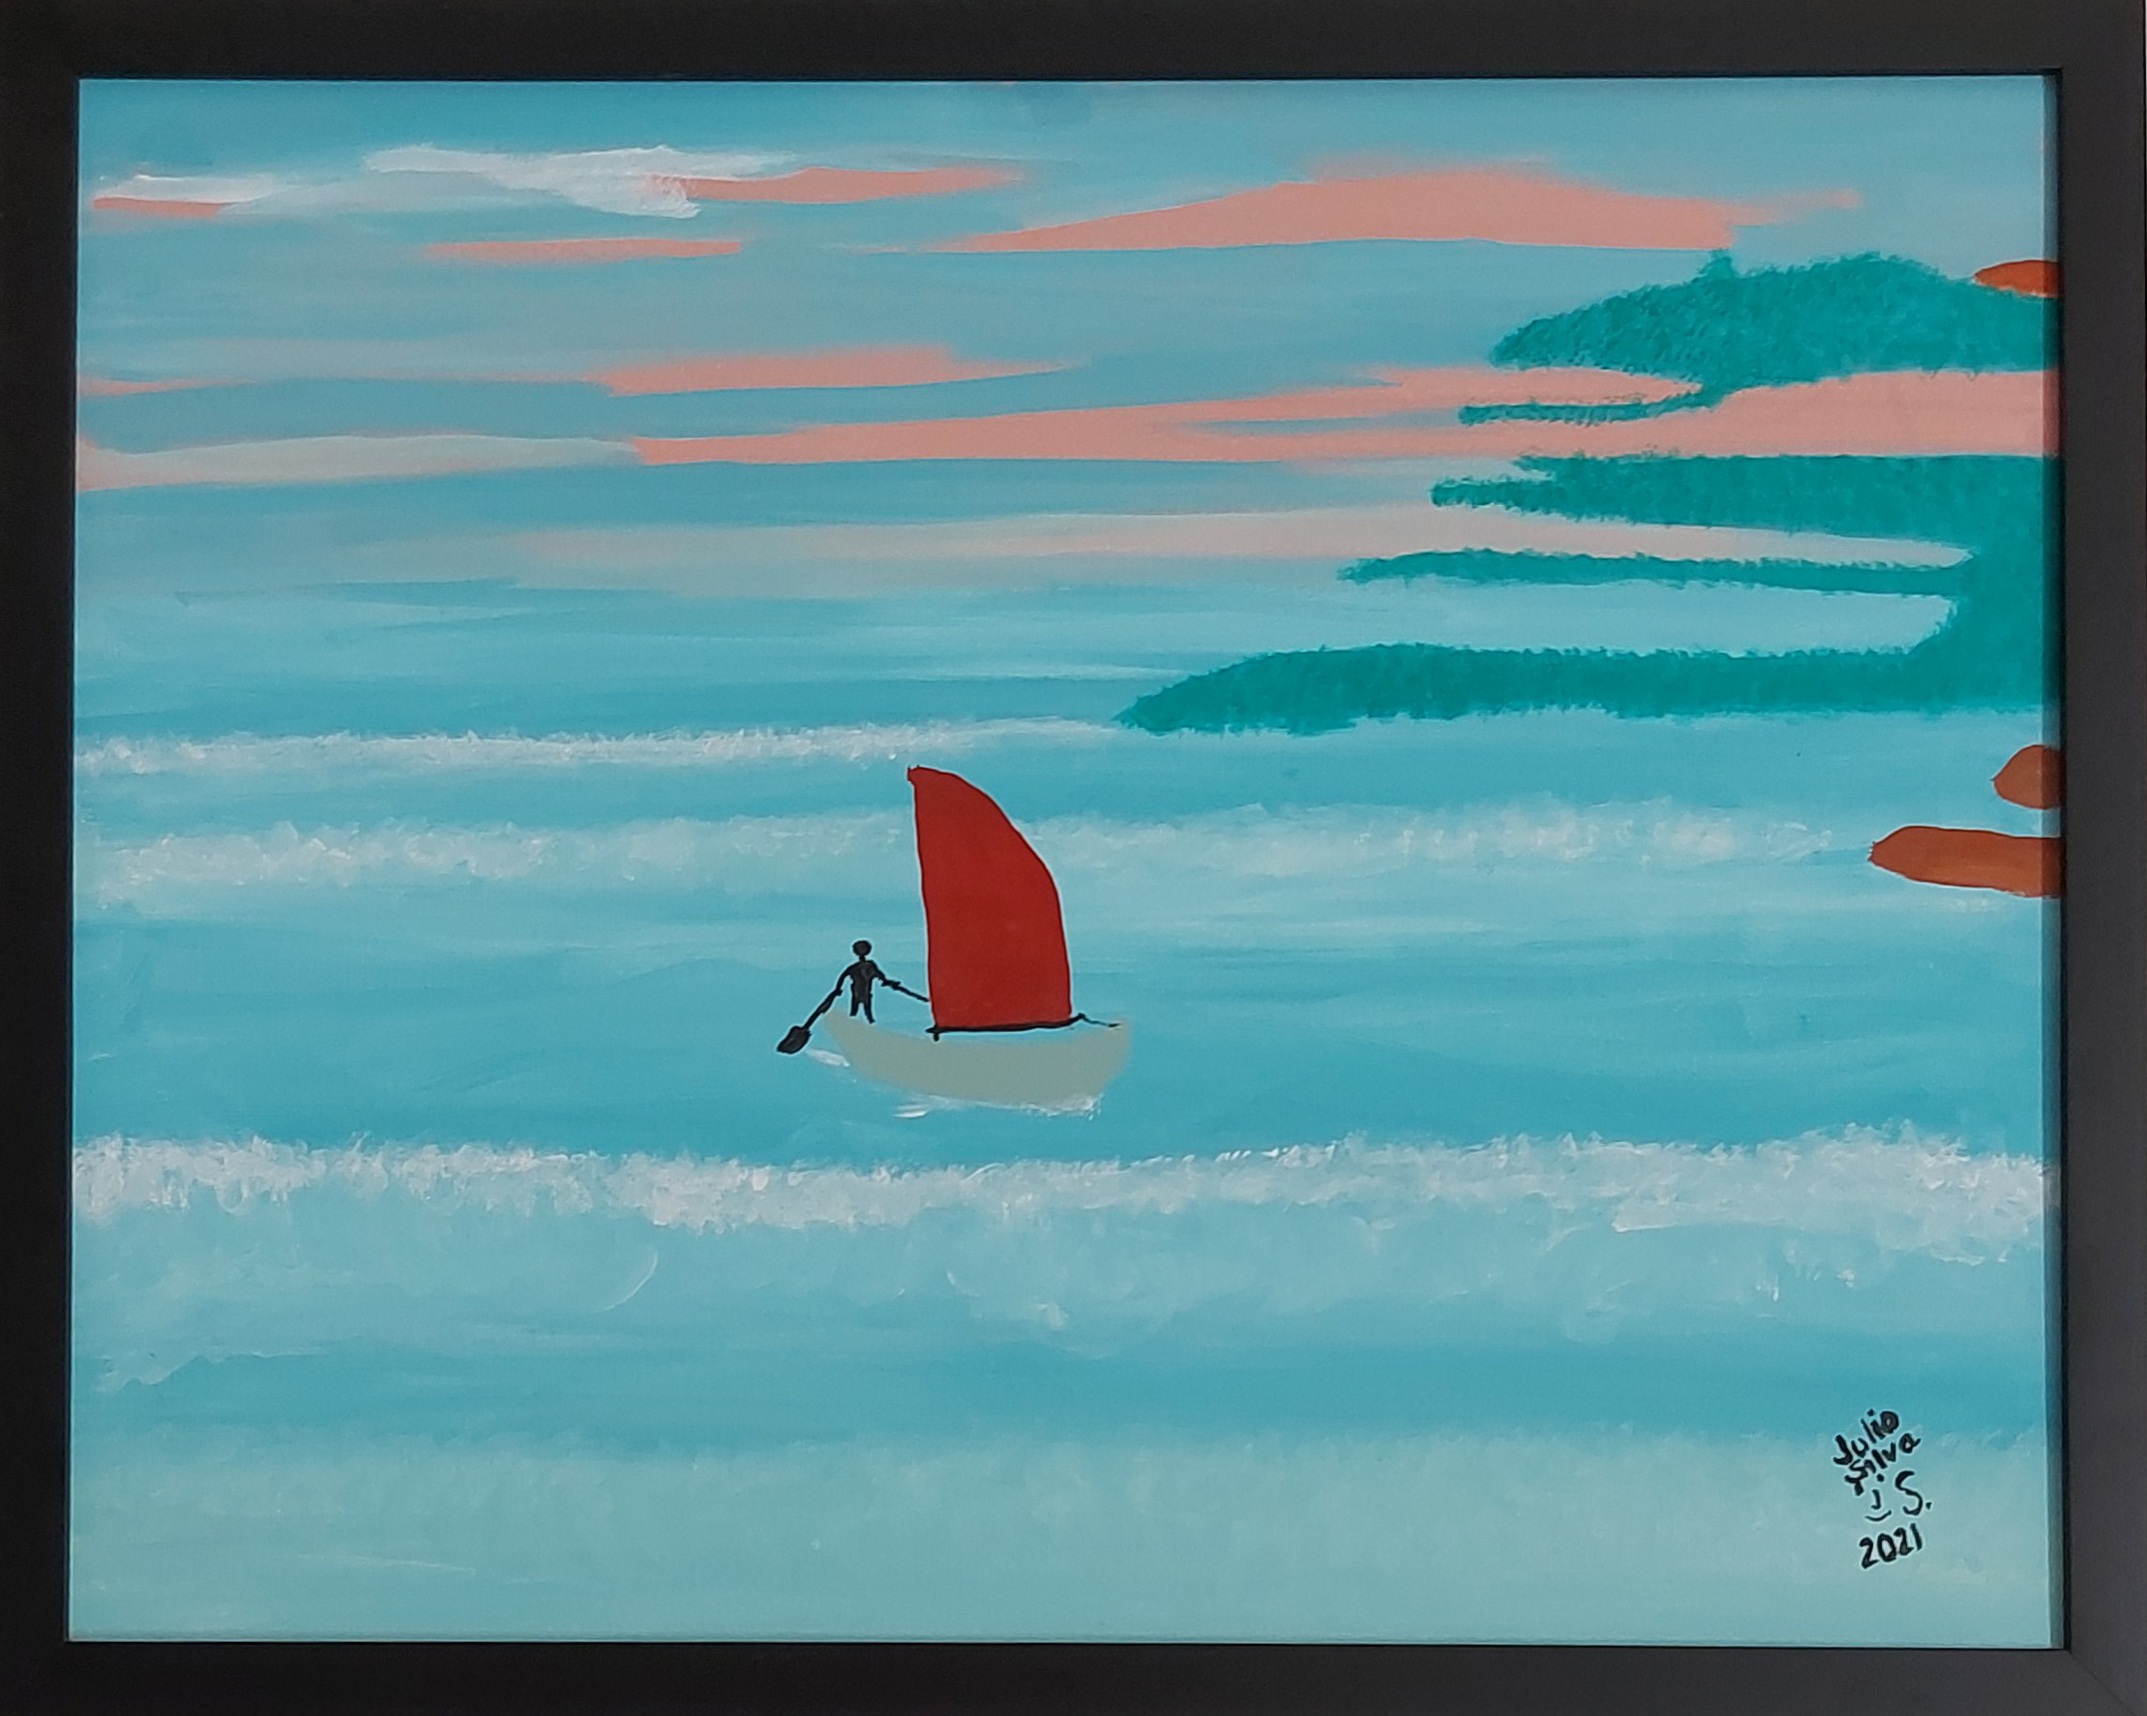 Pessoa em barco à vela aportando em enseada pintura Aportando em acrílica sobre tela 40x50 de Julio Silva, 2021